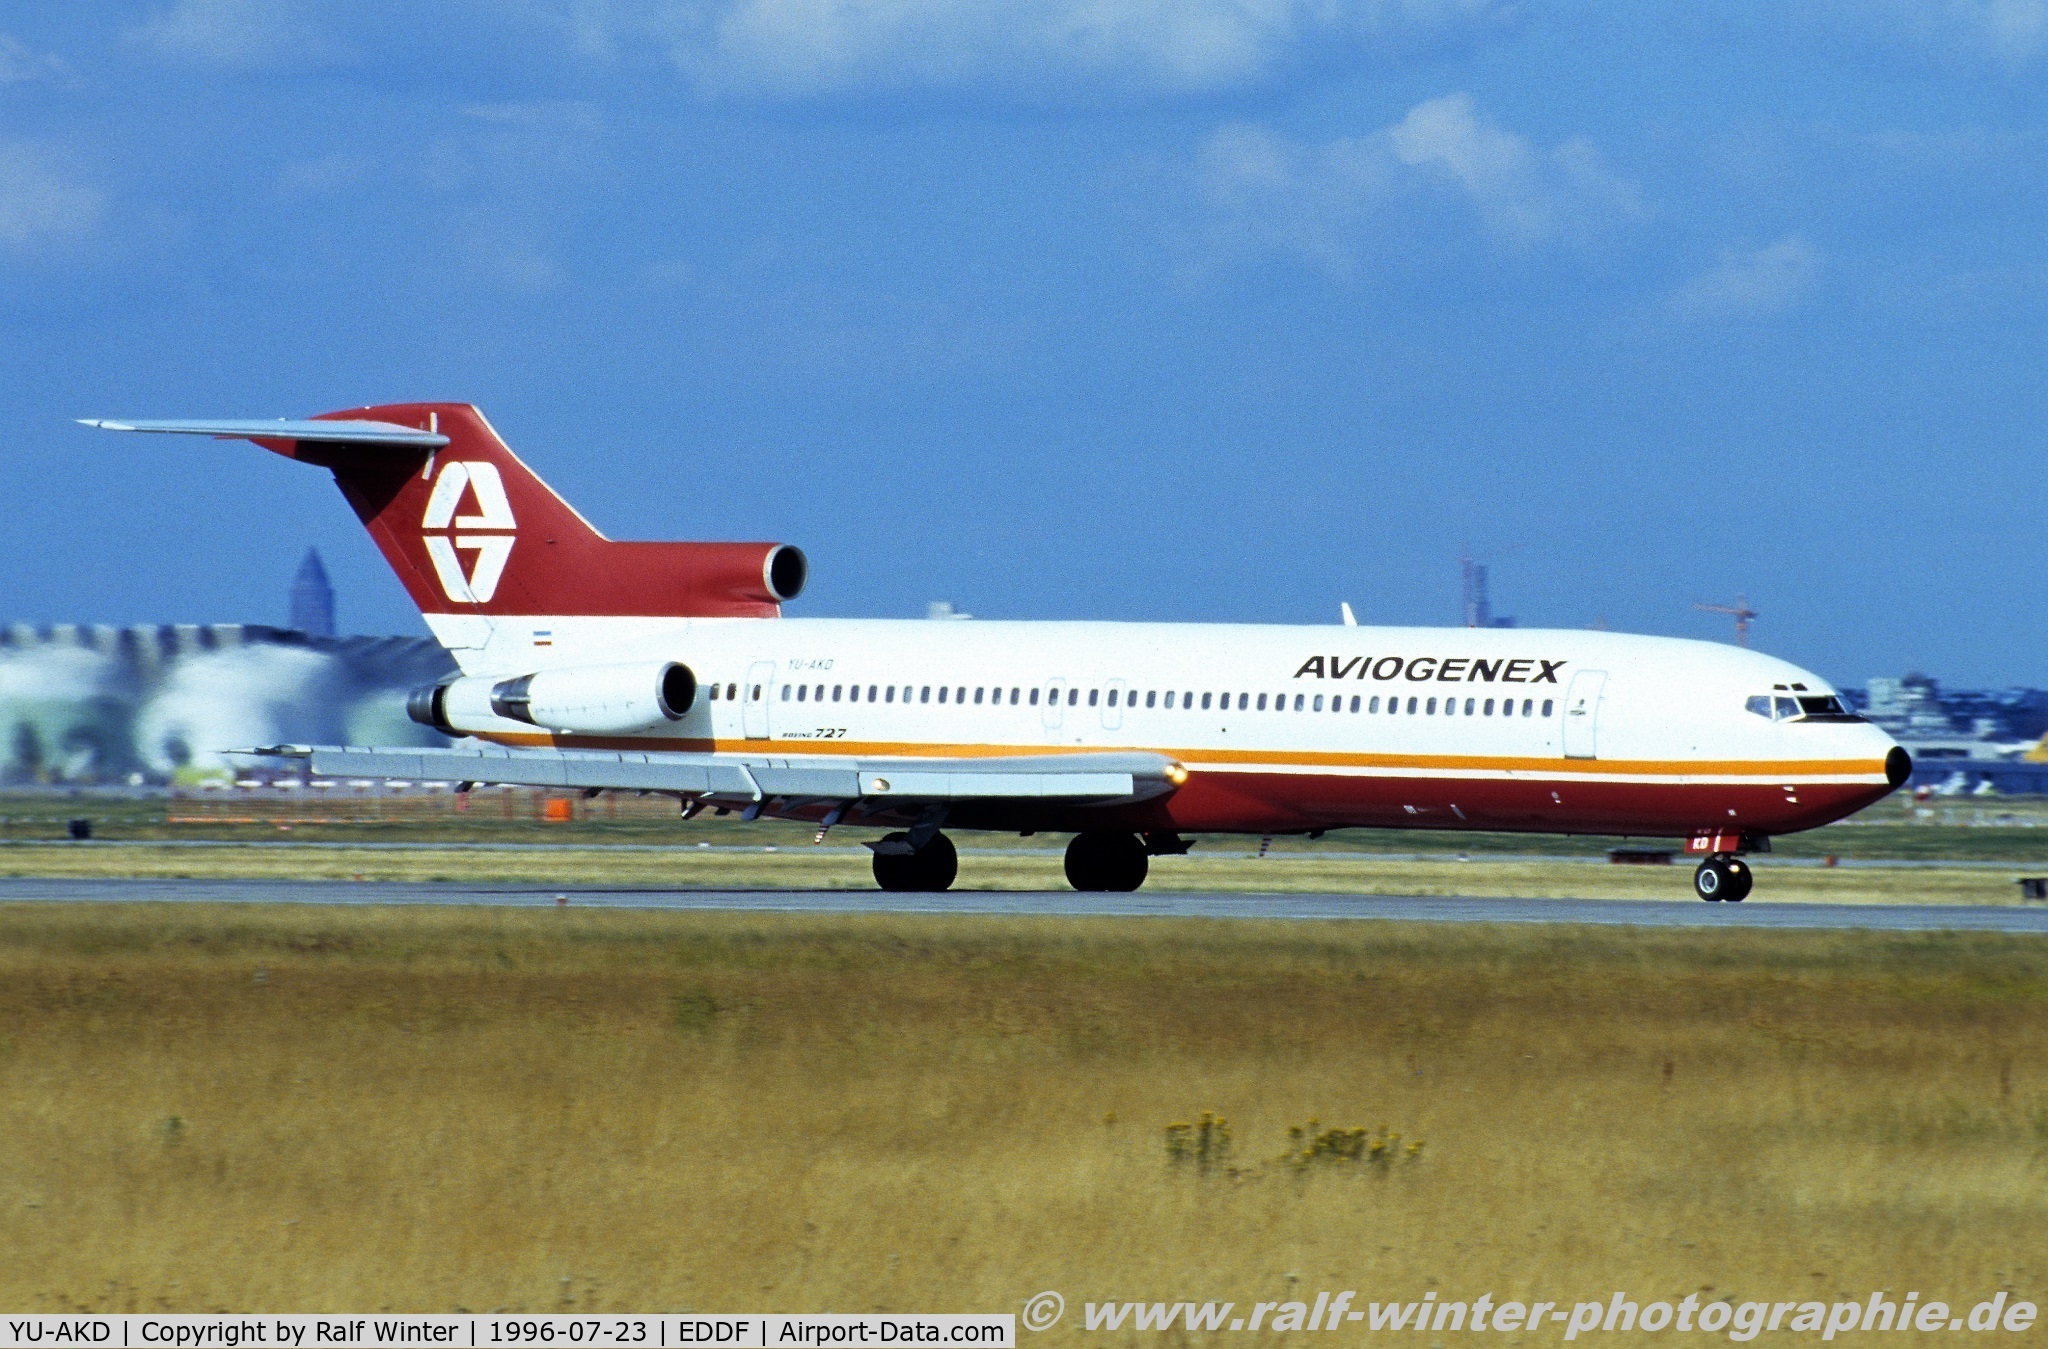 YU-AKD, 1975 Boeing 727-2L8 C/N 21040, Boeing 727-2L8(Adv) - Aviogenex 'Zagreb' - 21040 - YU-AKD - 23.07.1996 - FRA